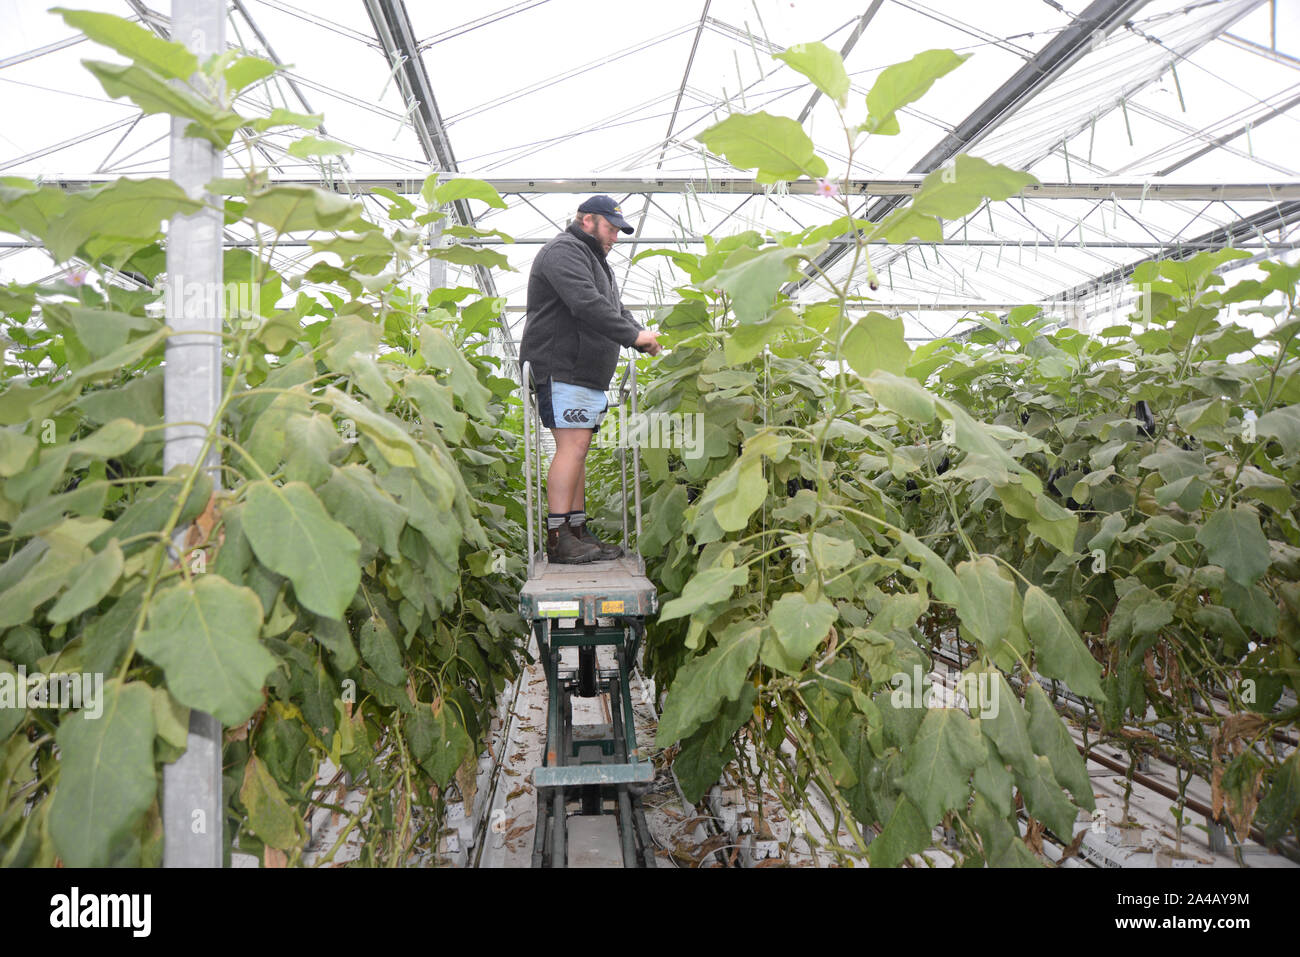 Côte ouest, la Nouvelle-Zélande, le 30 juin 2019 : Un producteur a tendance plantes dans un tunnelhouse commerciale, aubergine aubergine croissante, ou brinjal (Solanum melongena) Banque D'Images